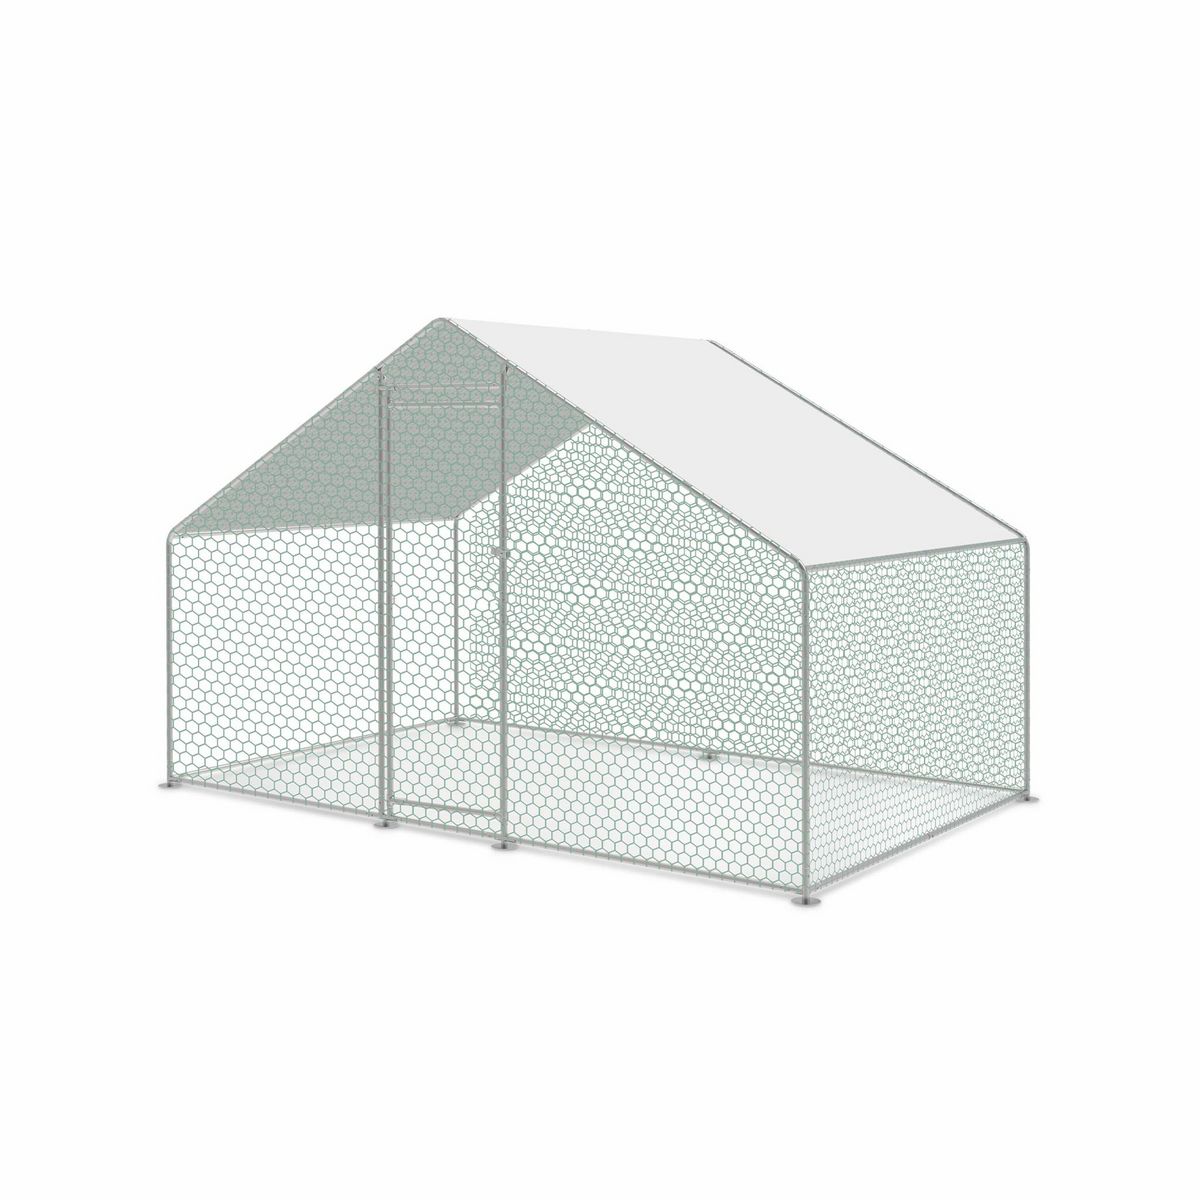  Enclos pour poulailler 6m² en acier galvanisé, toit imperméable et anti UV, porte avec loquet